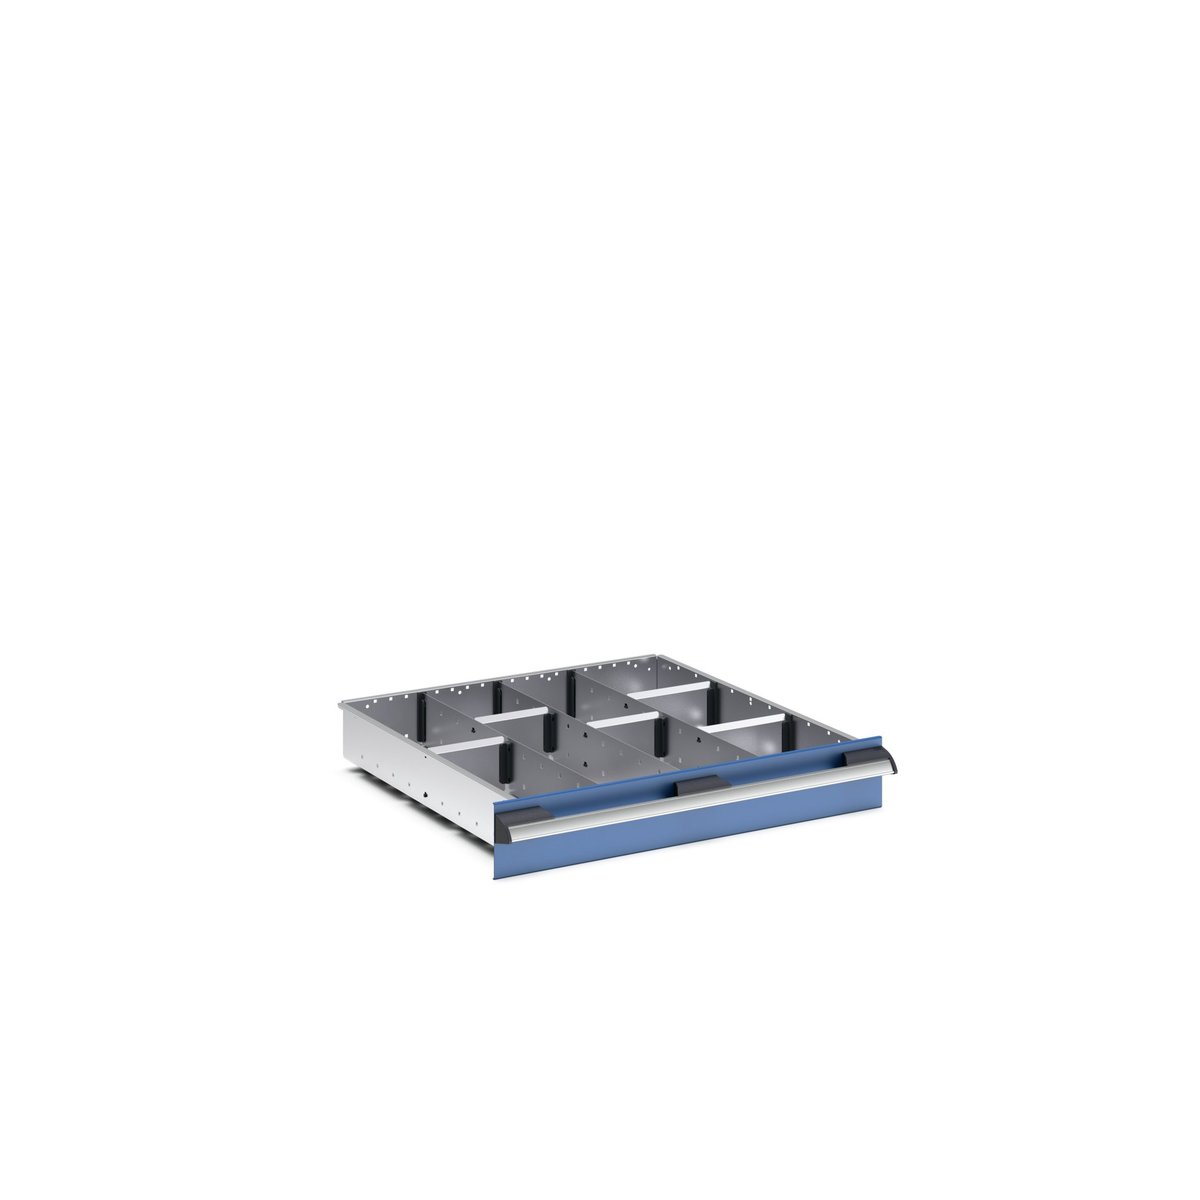 43020643.51 - cubio adjustable divider kit